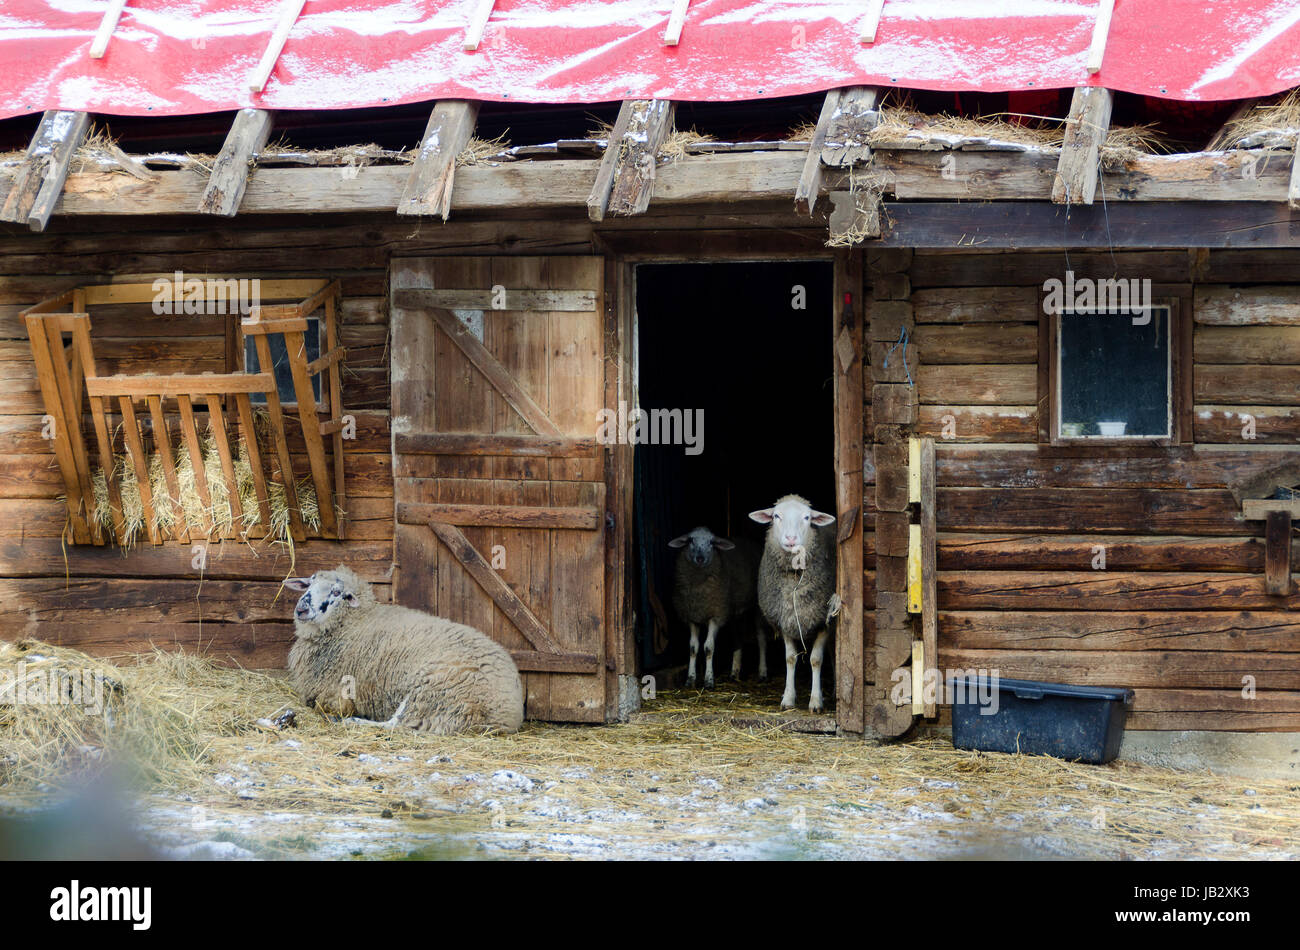 Hölzener Stall mit offener Türe und Schafen; wooden stable with open door and sheeps Stock Photo